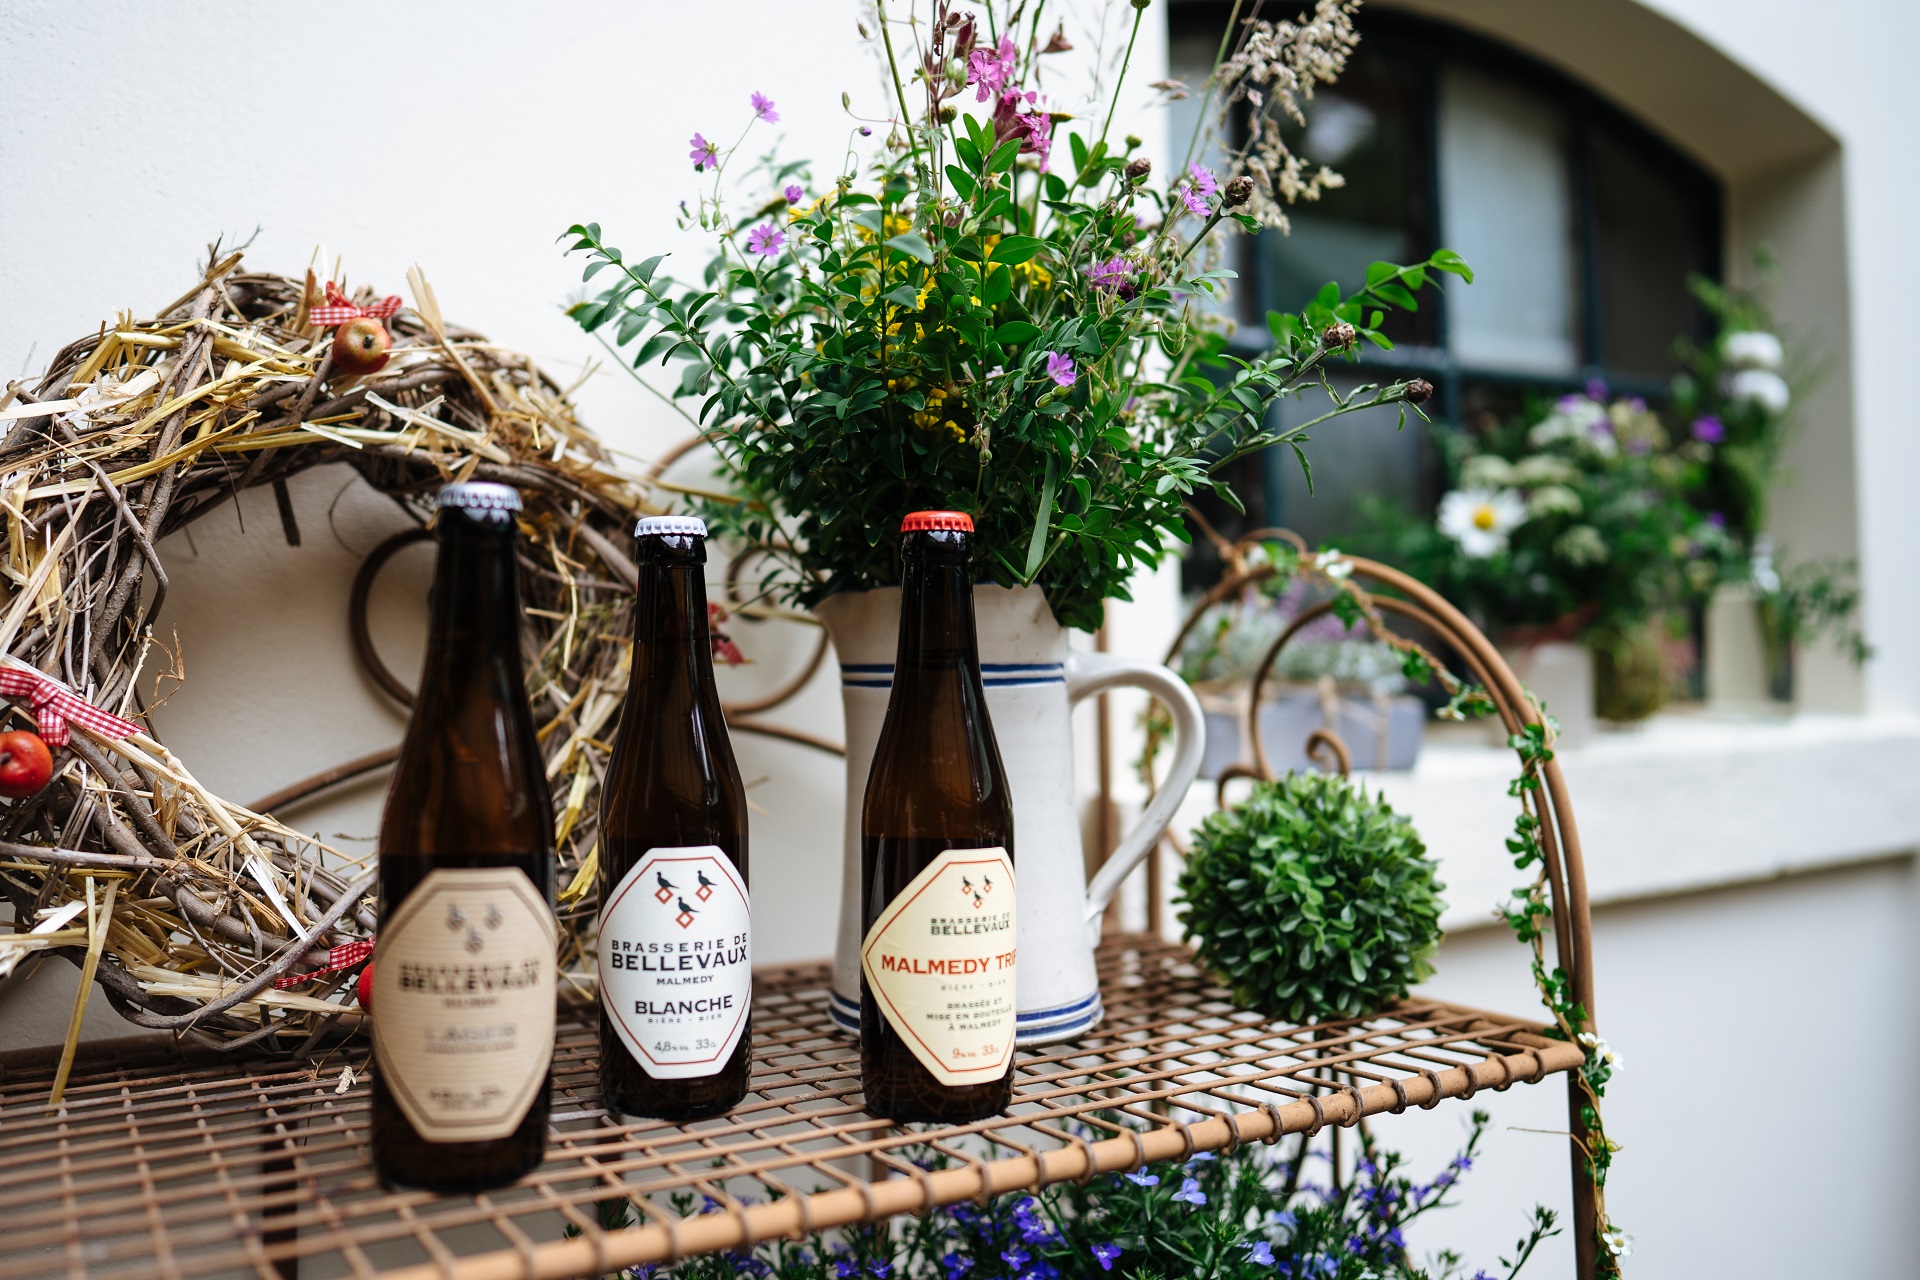 Trois types différents de bière de la brasserie de Bellevaux, sur une étagère dans la cour de la brasserie. Il y a des fleurs sur l'étagère.